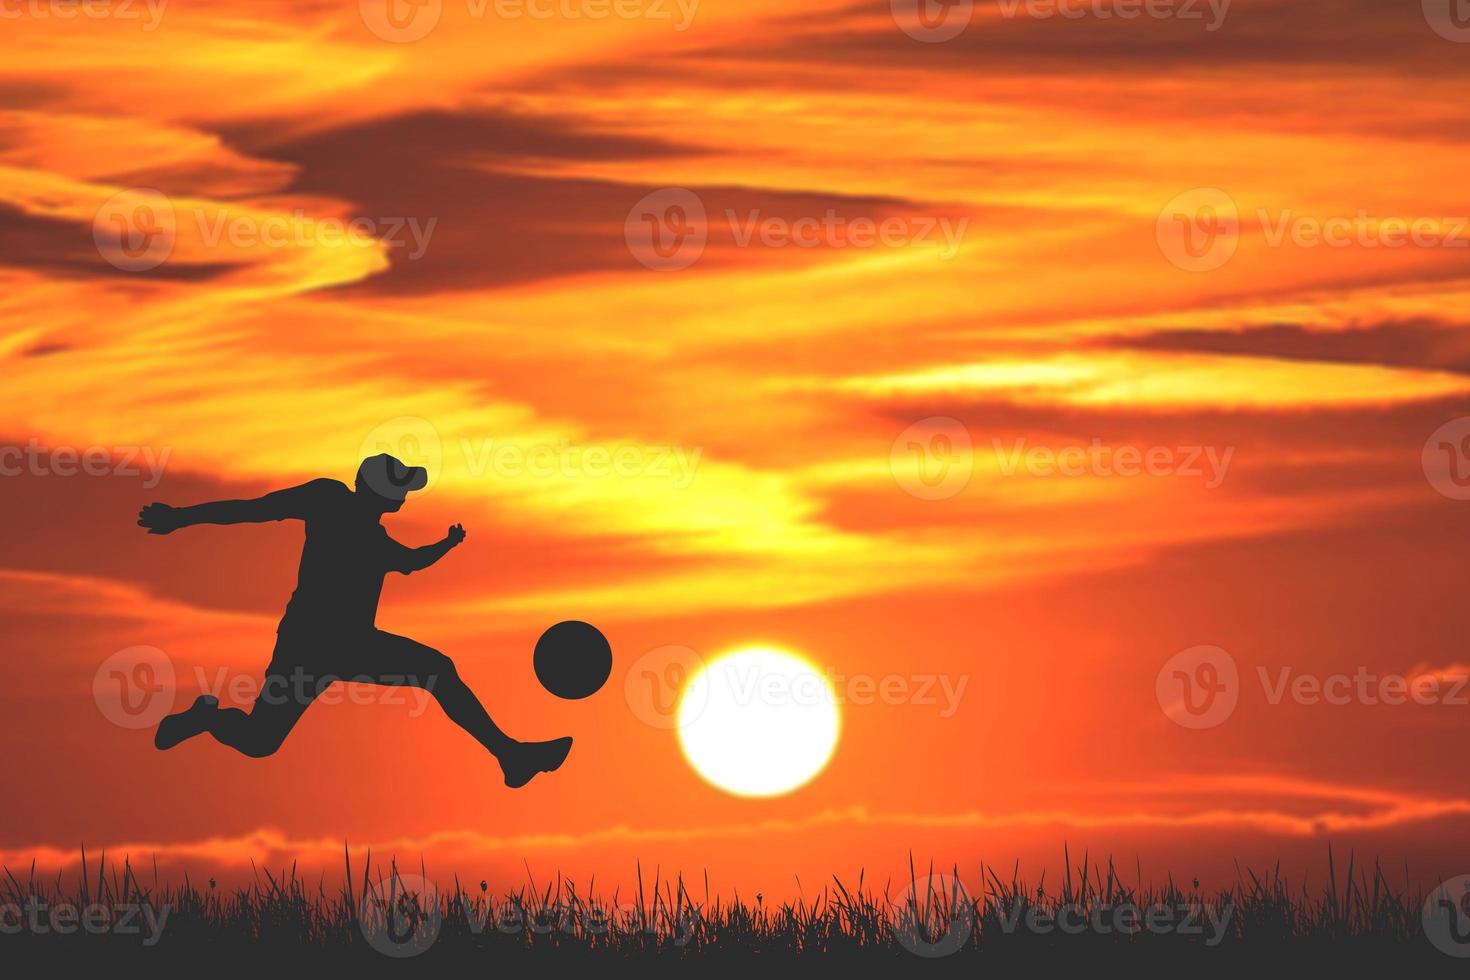 sagoma di giocatori di football la sera. il concetto di calcio è popolare in tutto il mondo. foto